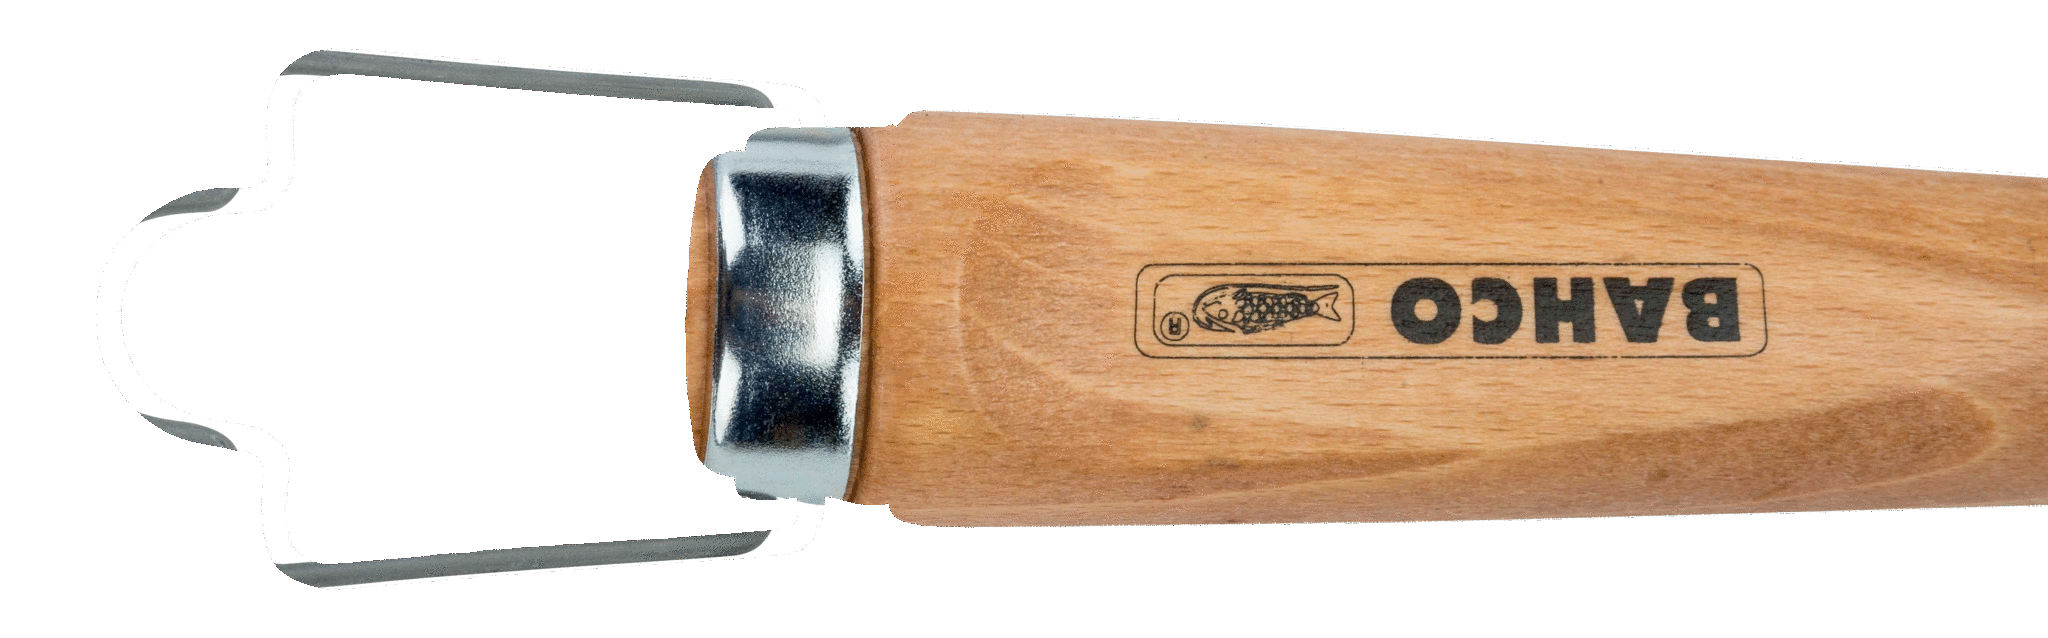 картинка Стамеска с деревянной рукояткой BAHCO 425-26 от магазина "Элит-инструмент"